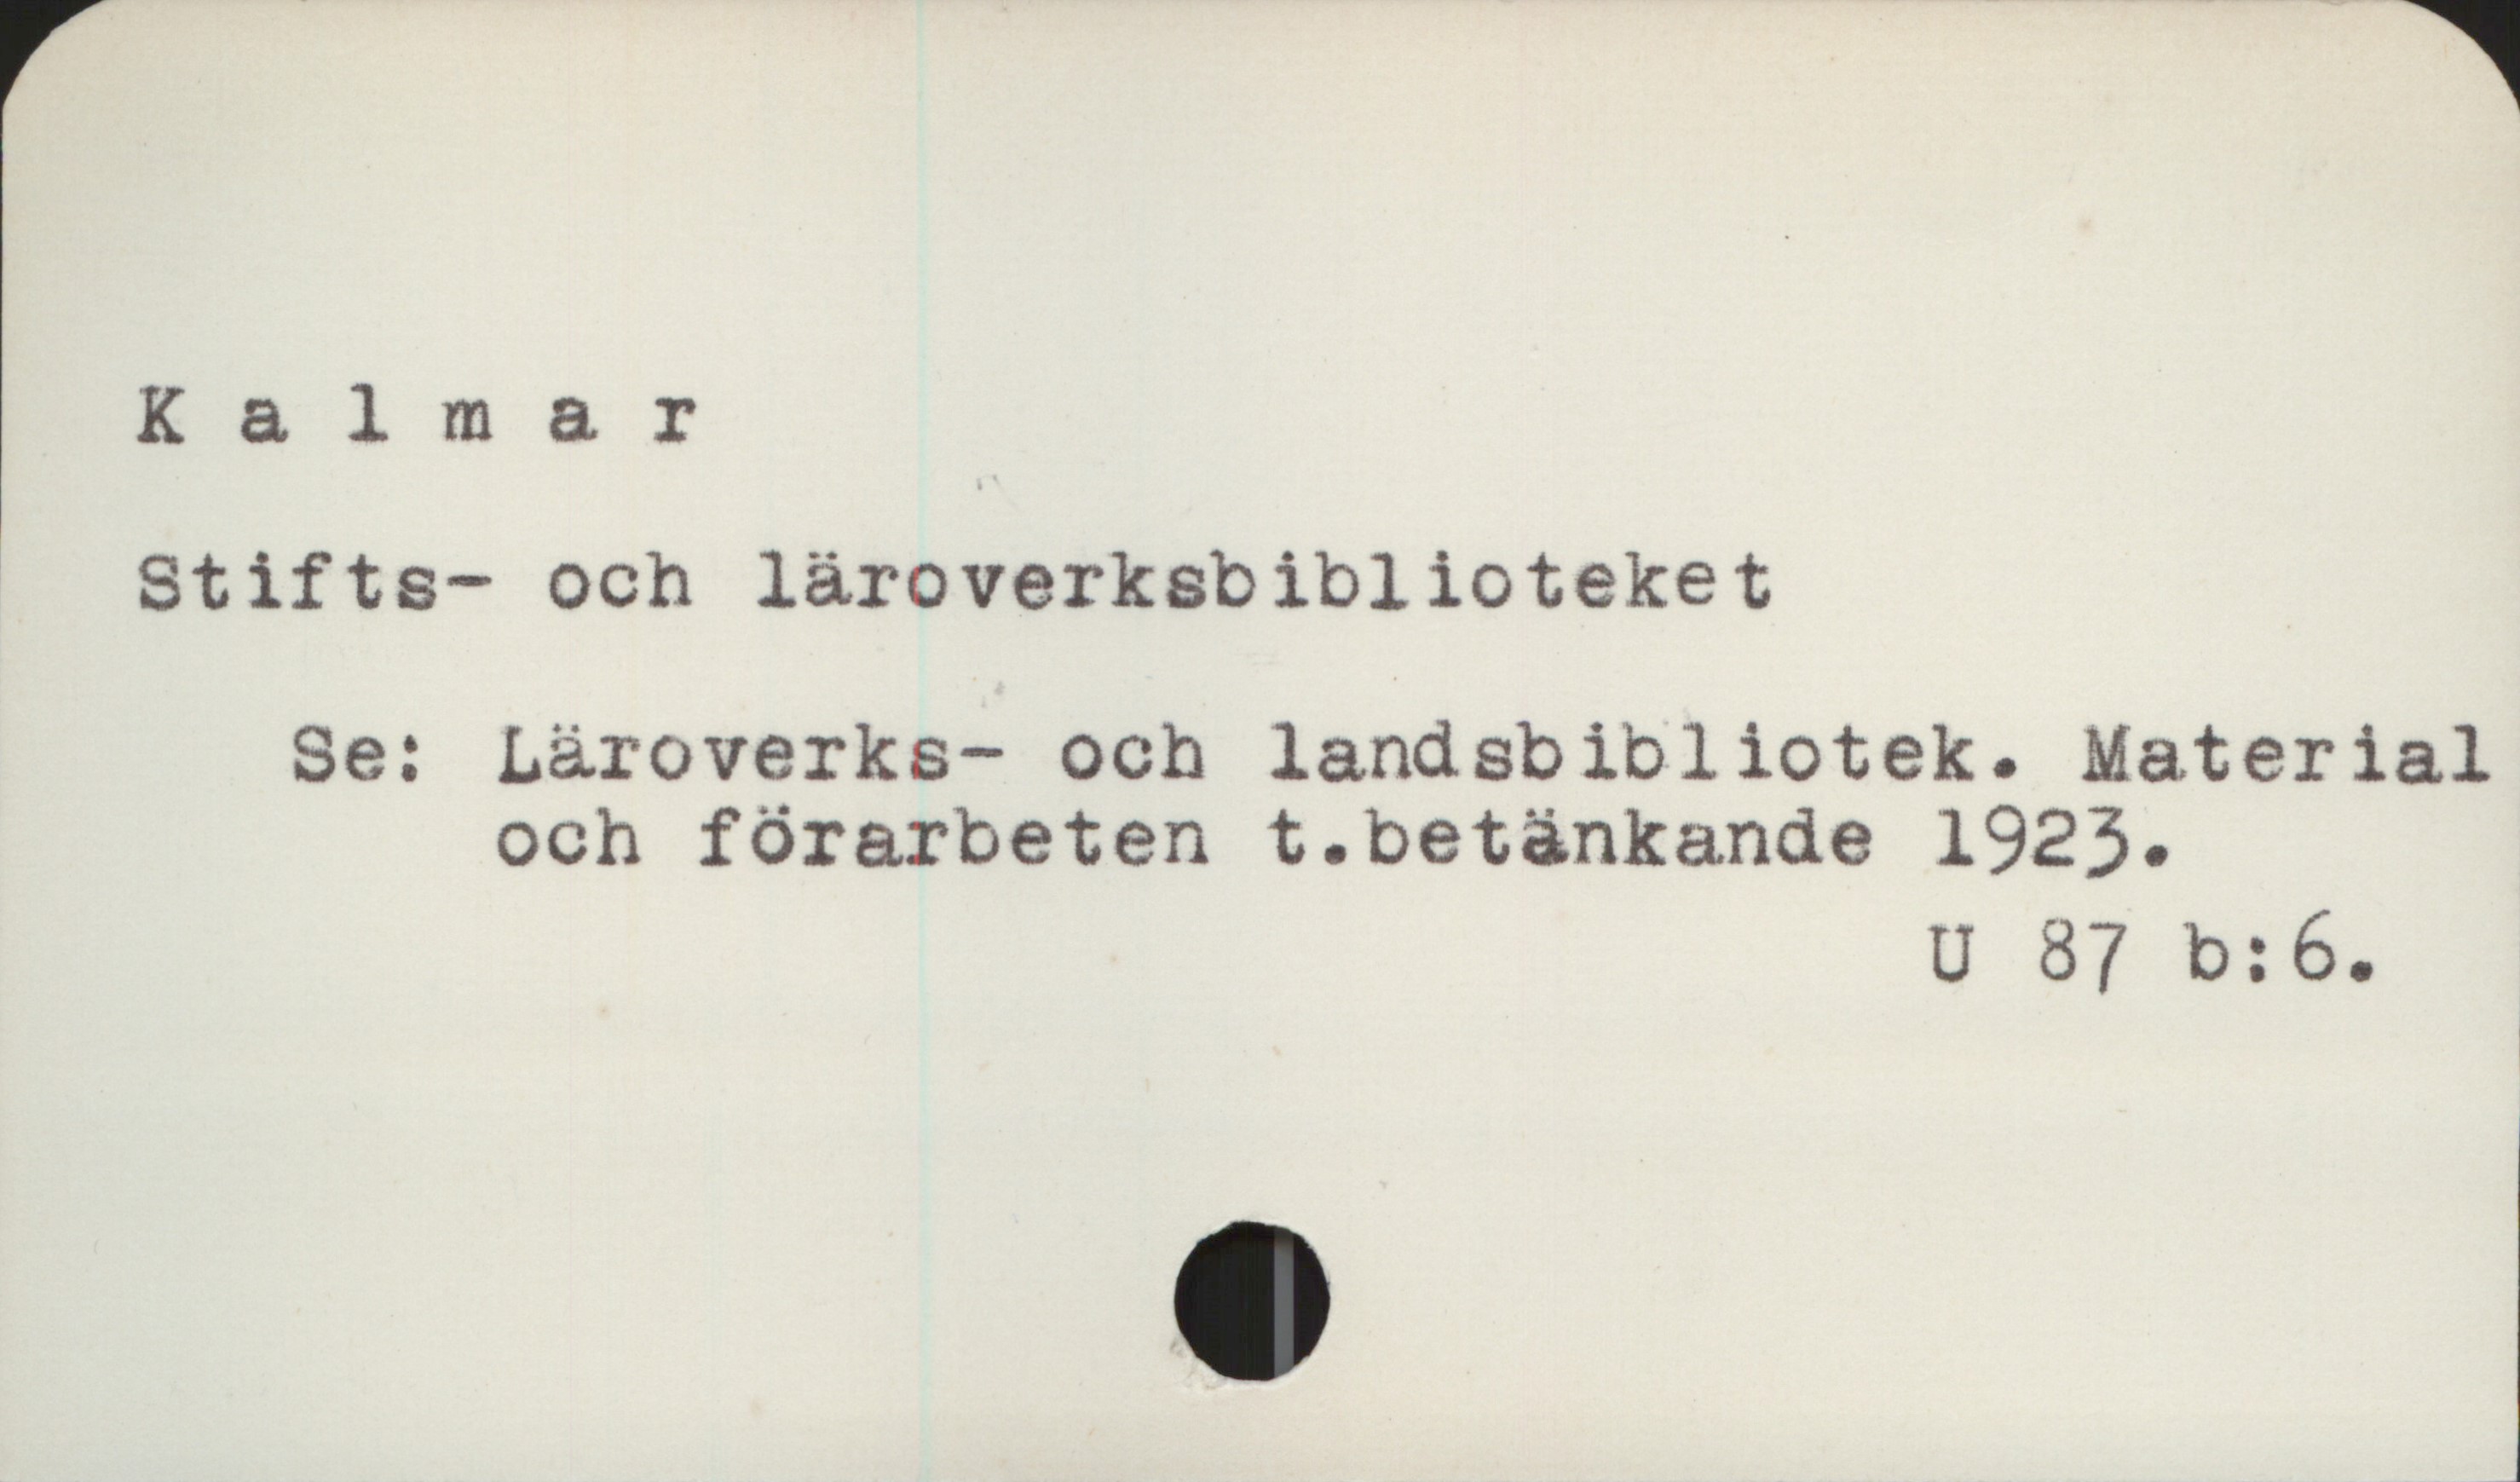  Kalmar
Stifts- och läroverksbiblioteket
Se: Läroverks- och landsbibliotek. Material
och förarbeten t.betänkande 1925.
U 87 b:6.

